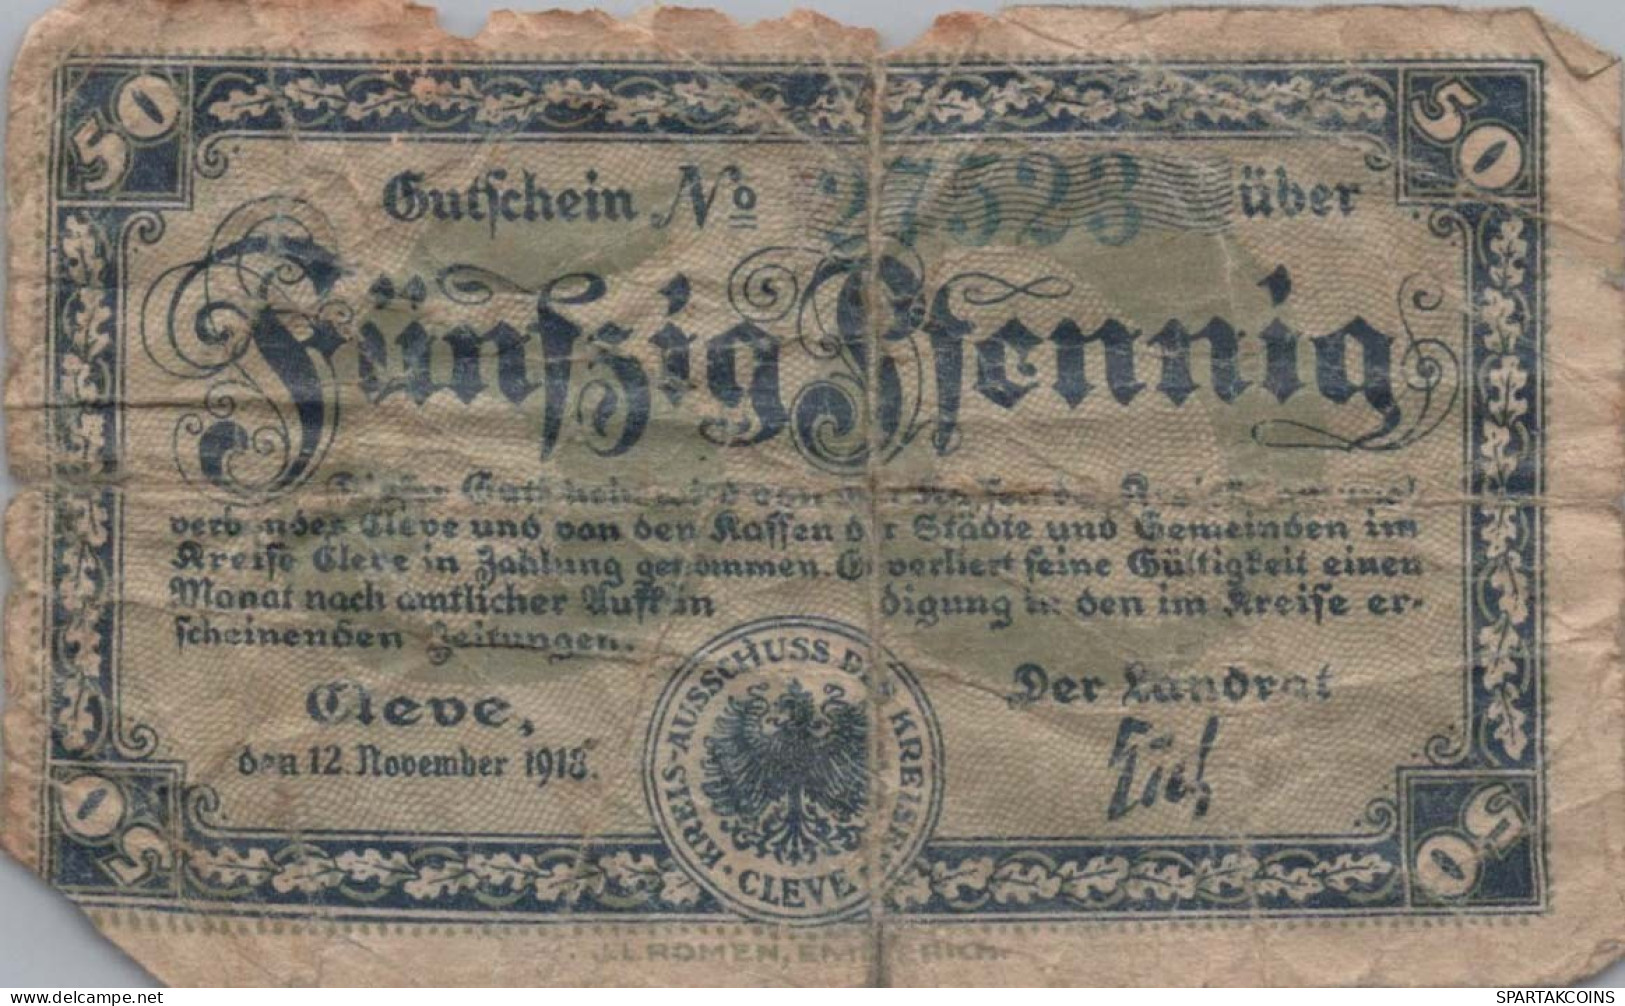 50 PFENNIG 1918 Stadt RHINE Rhine DEUTSCHLAND Notgeld Banknote #PG448 - [11] Local Banknote Issues